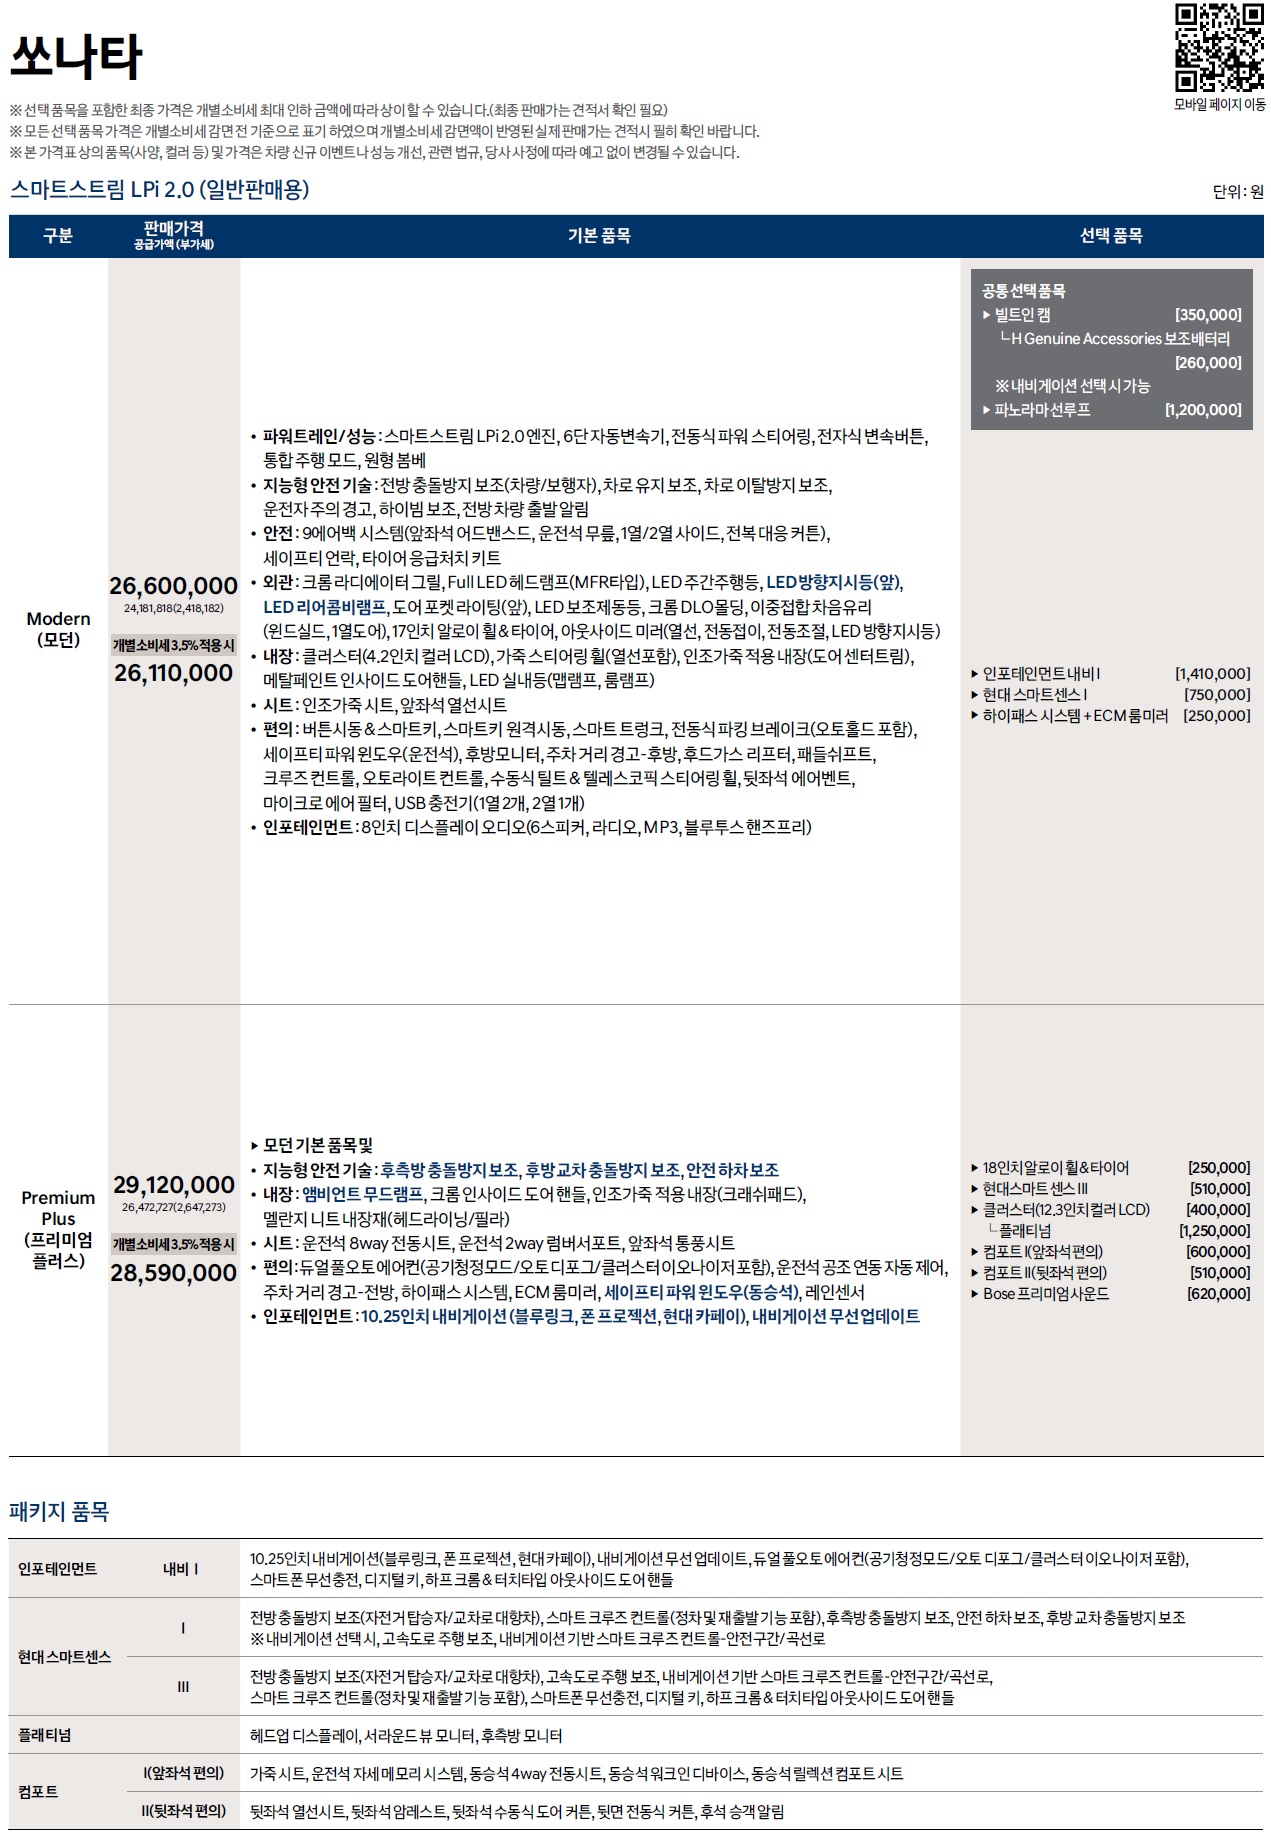 쏘나타 가격표 - 2022년 07월 (2023년형) -3.jpg